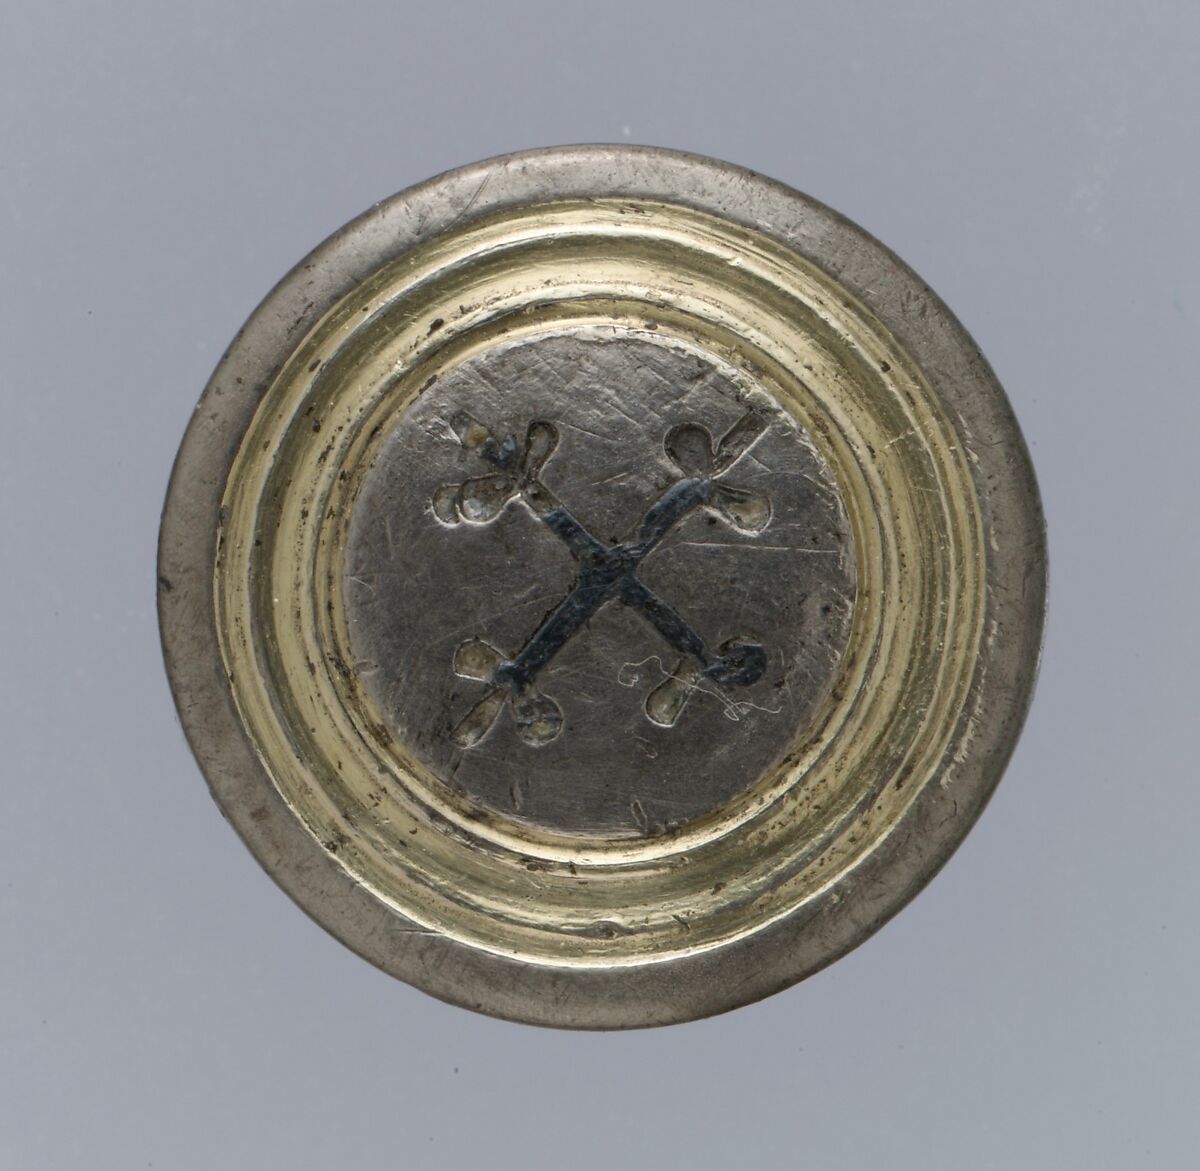 Disk brooch, Silver-gilt, niello, Late Roman 